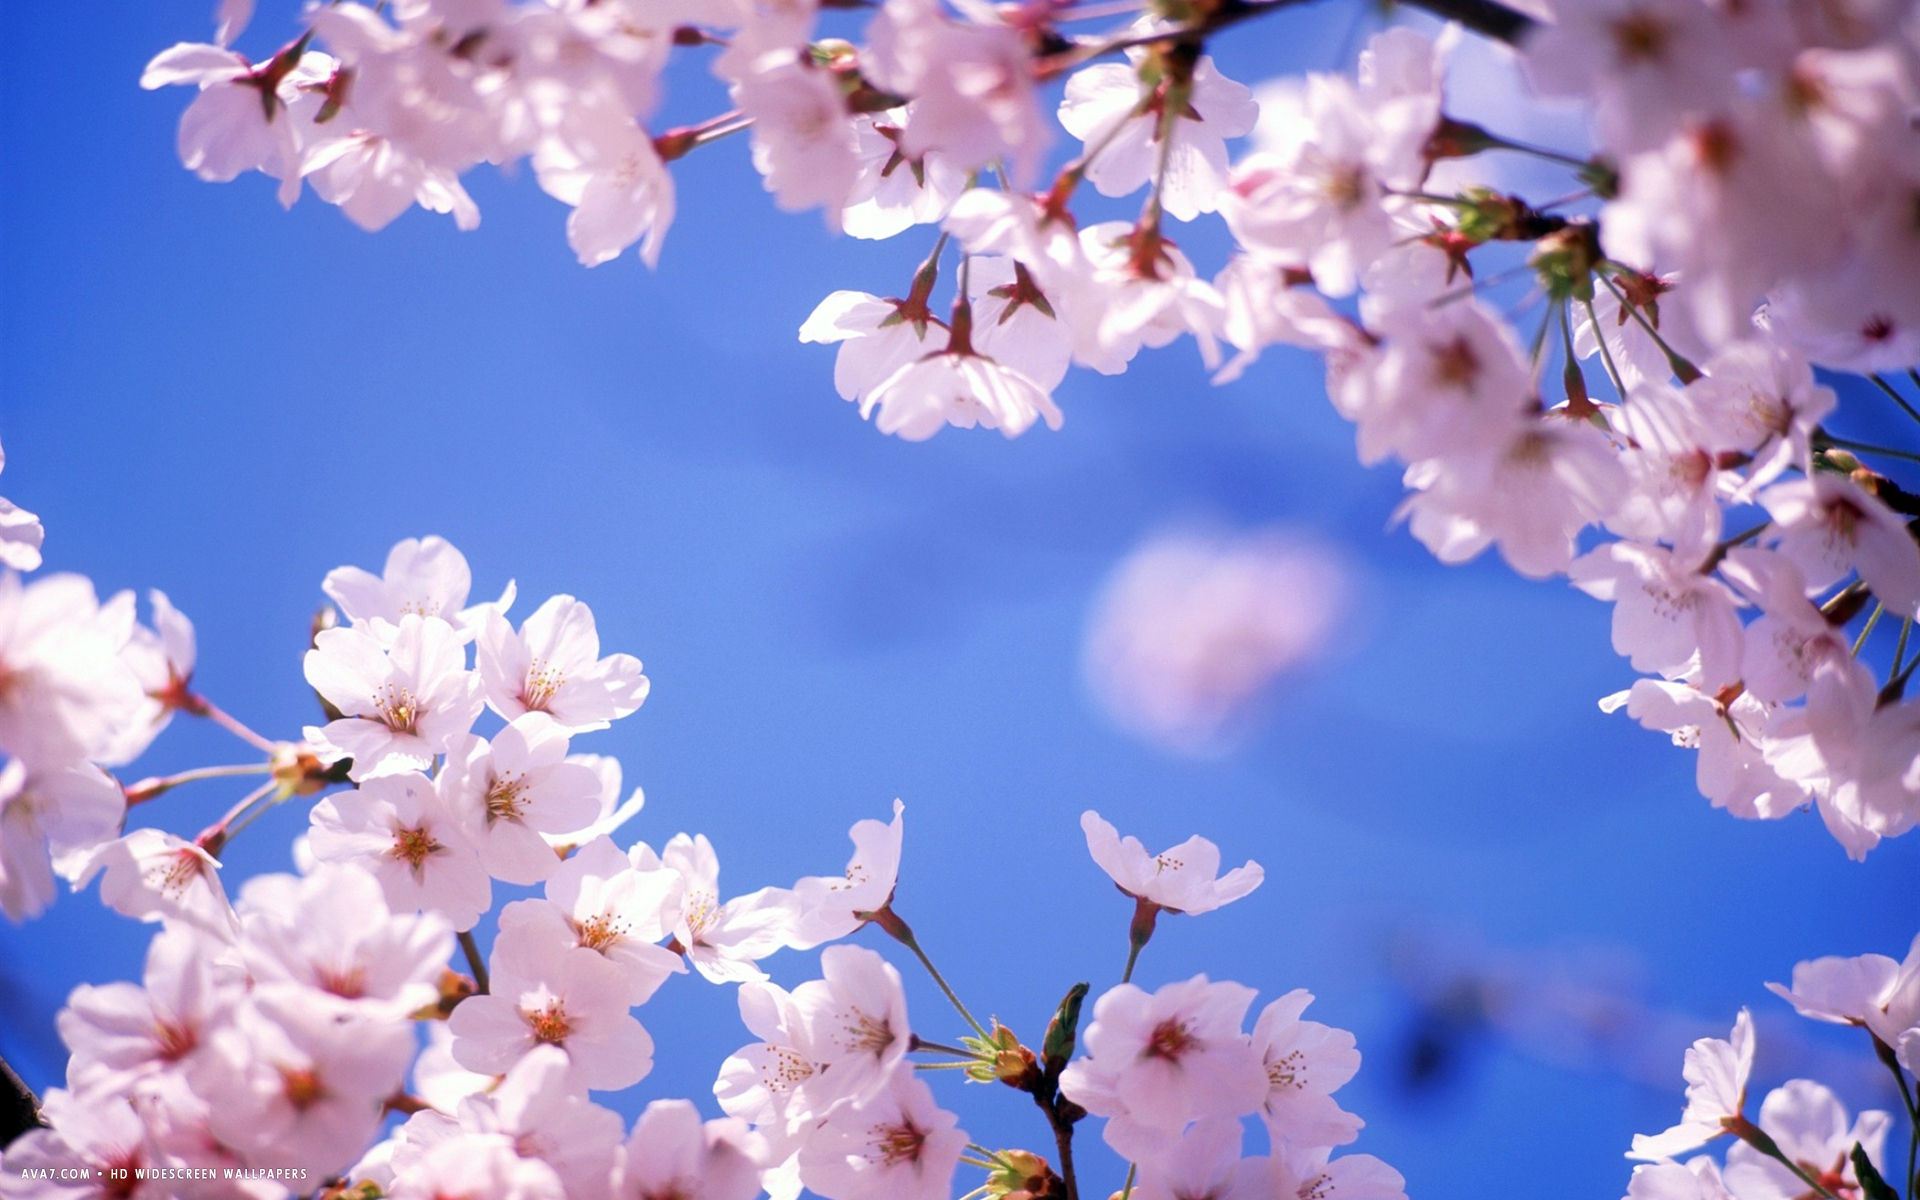 Cherry Blossom Design